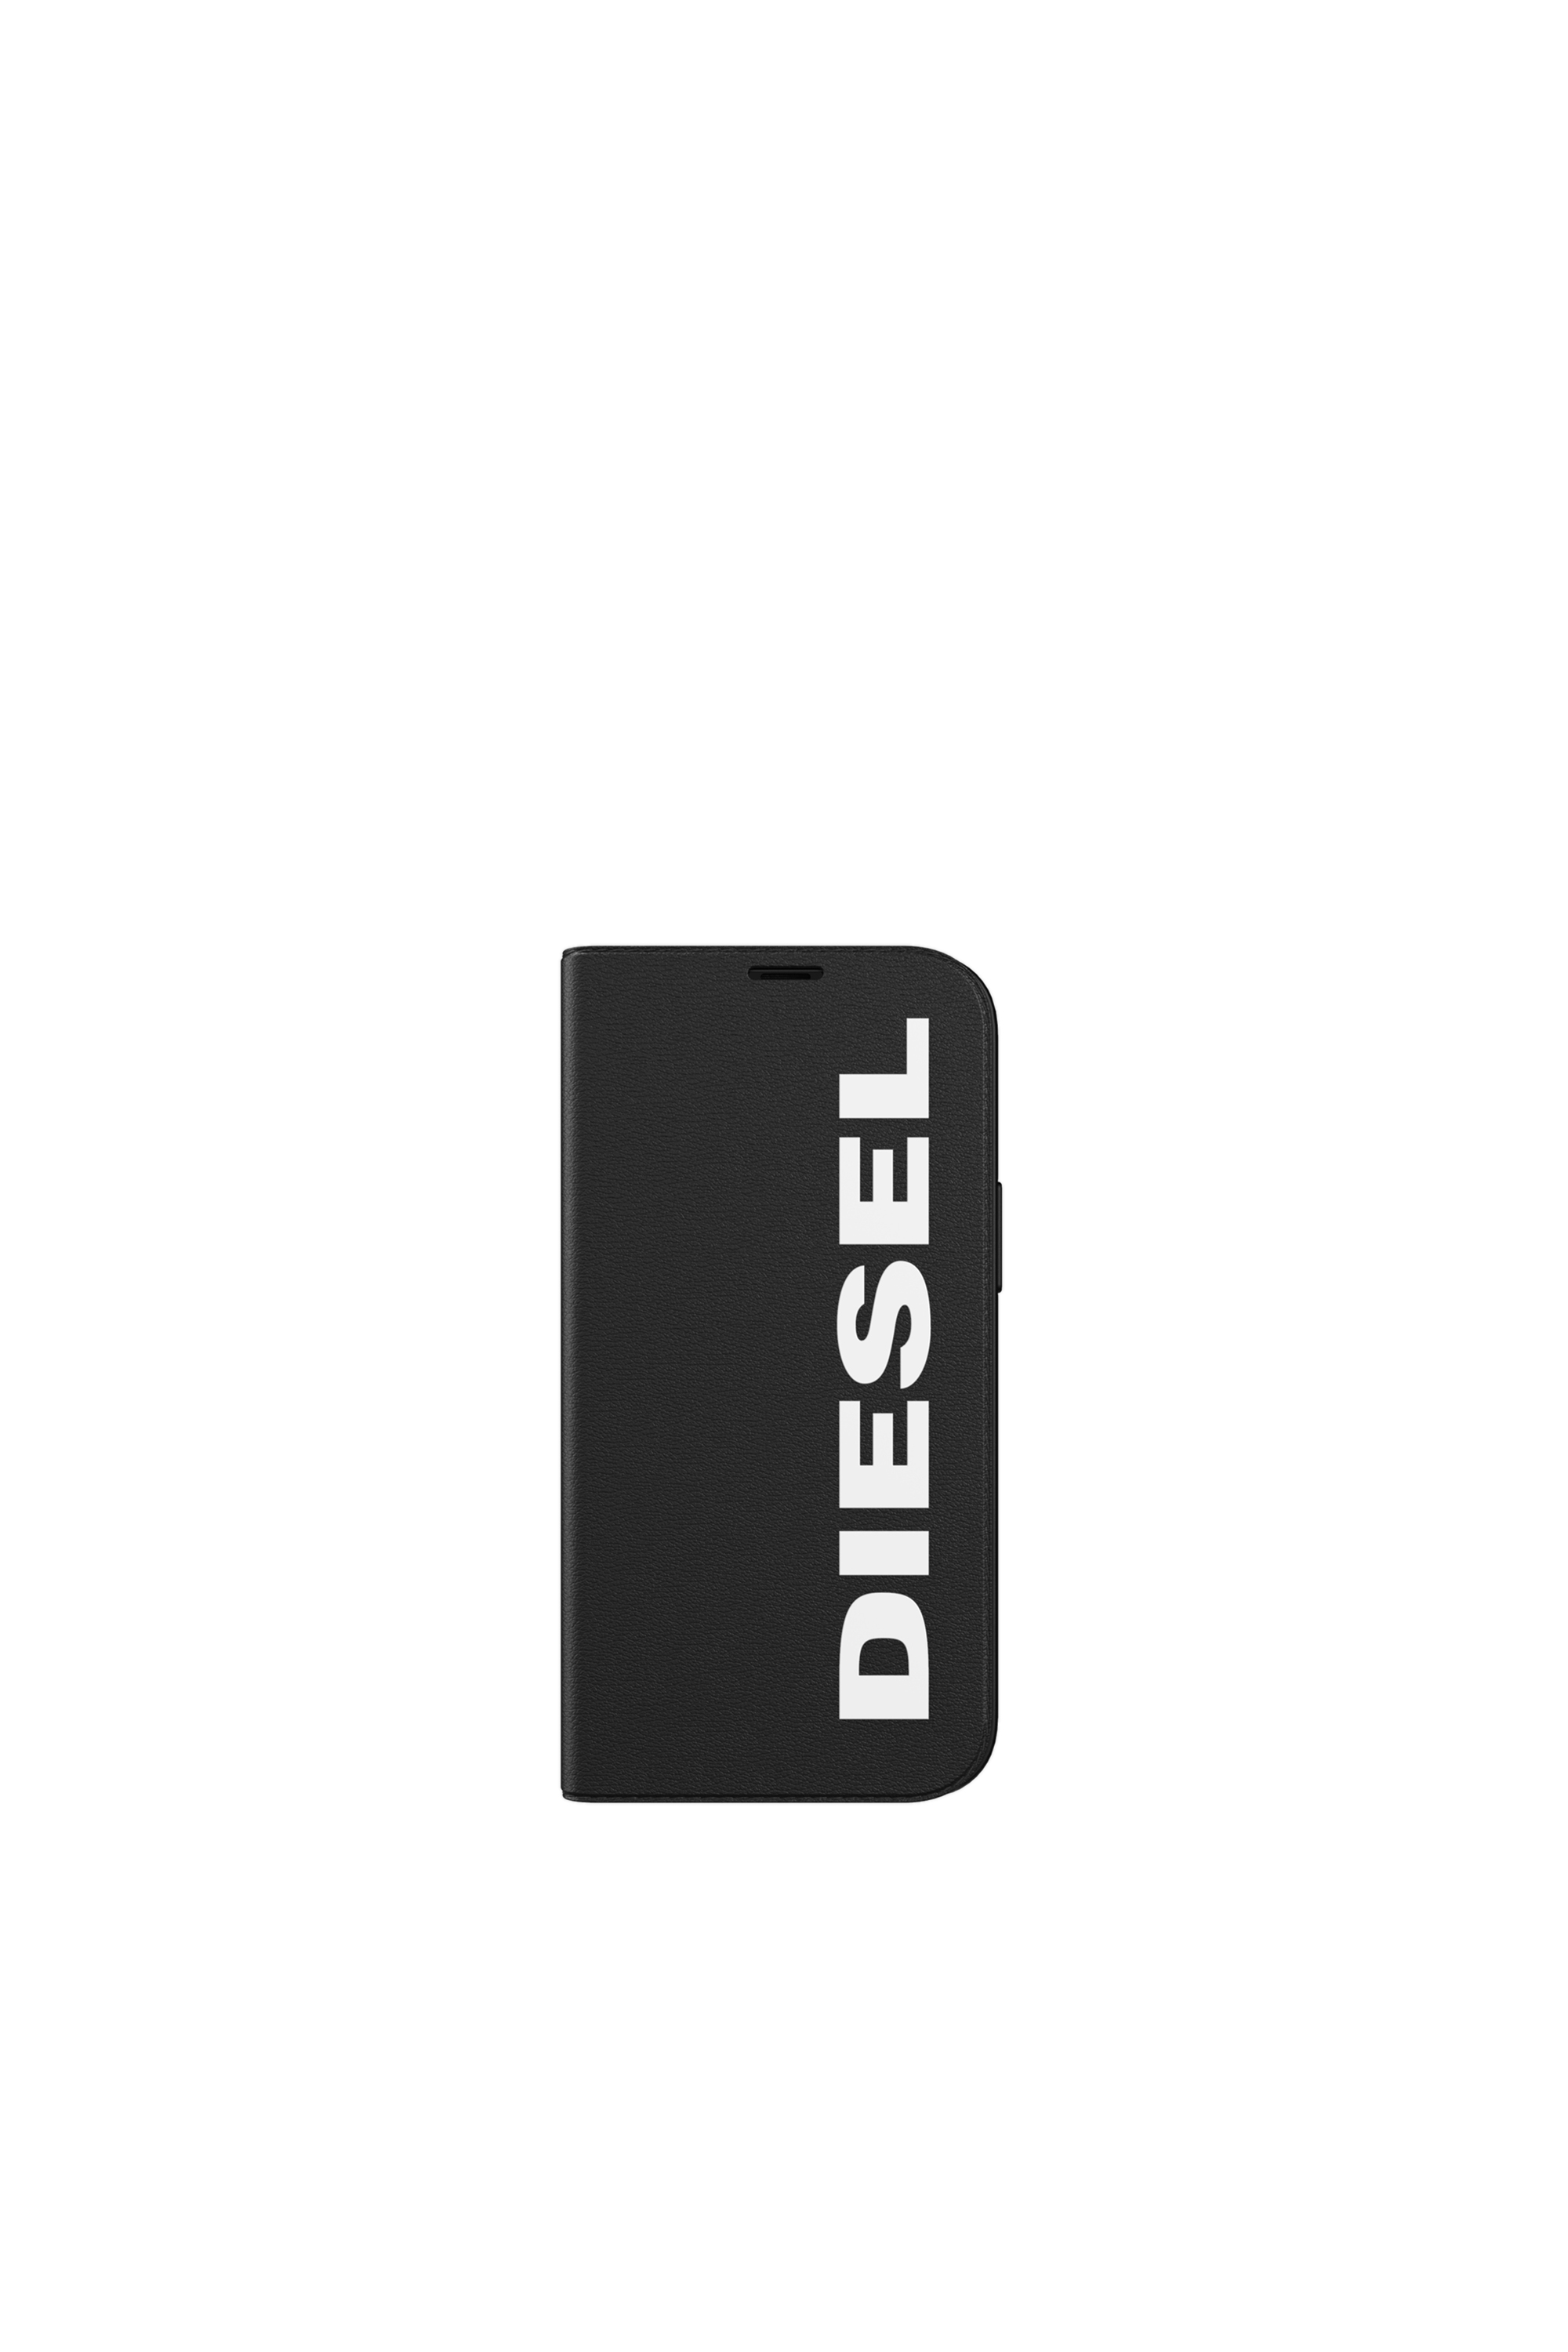 Diesel - 42485, Black - Image 2